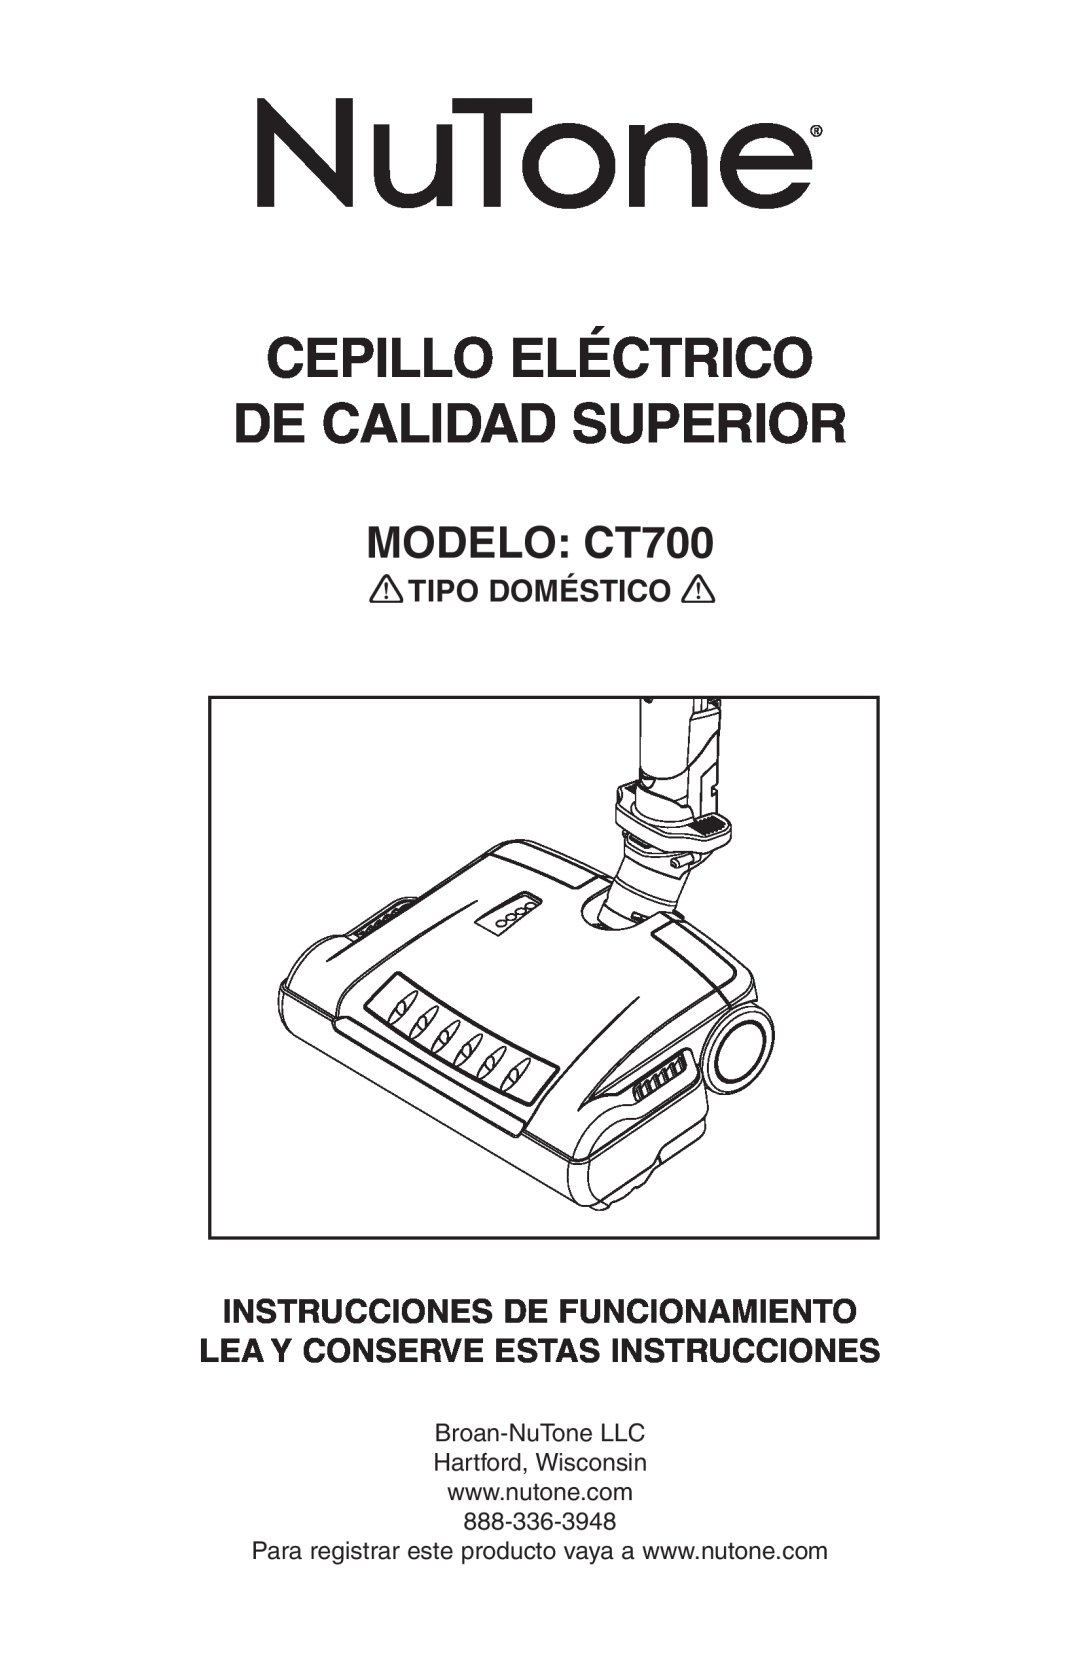 NuTone AB0008 manual Cepillo Eléctrico De Calidad Superior, MODELO CT700, Tipo Doméstico 